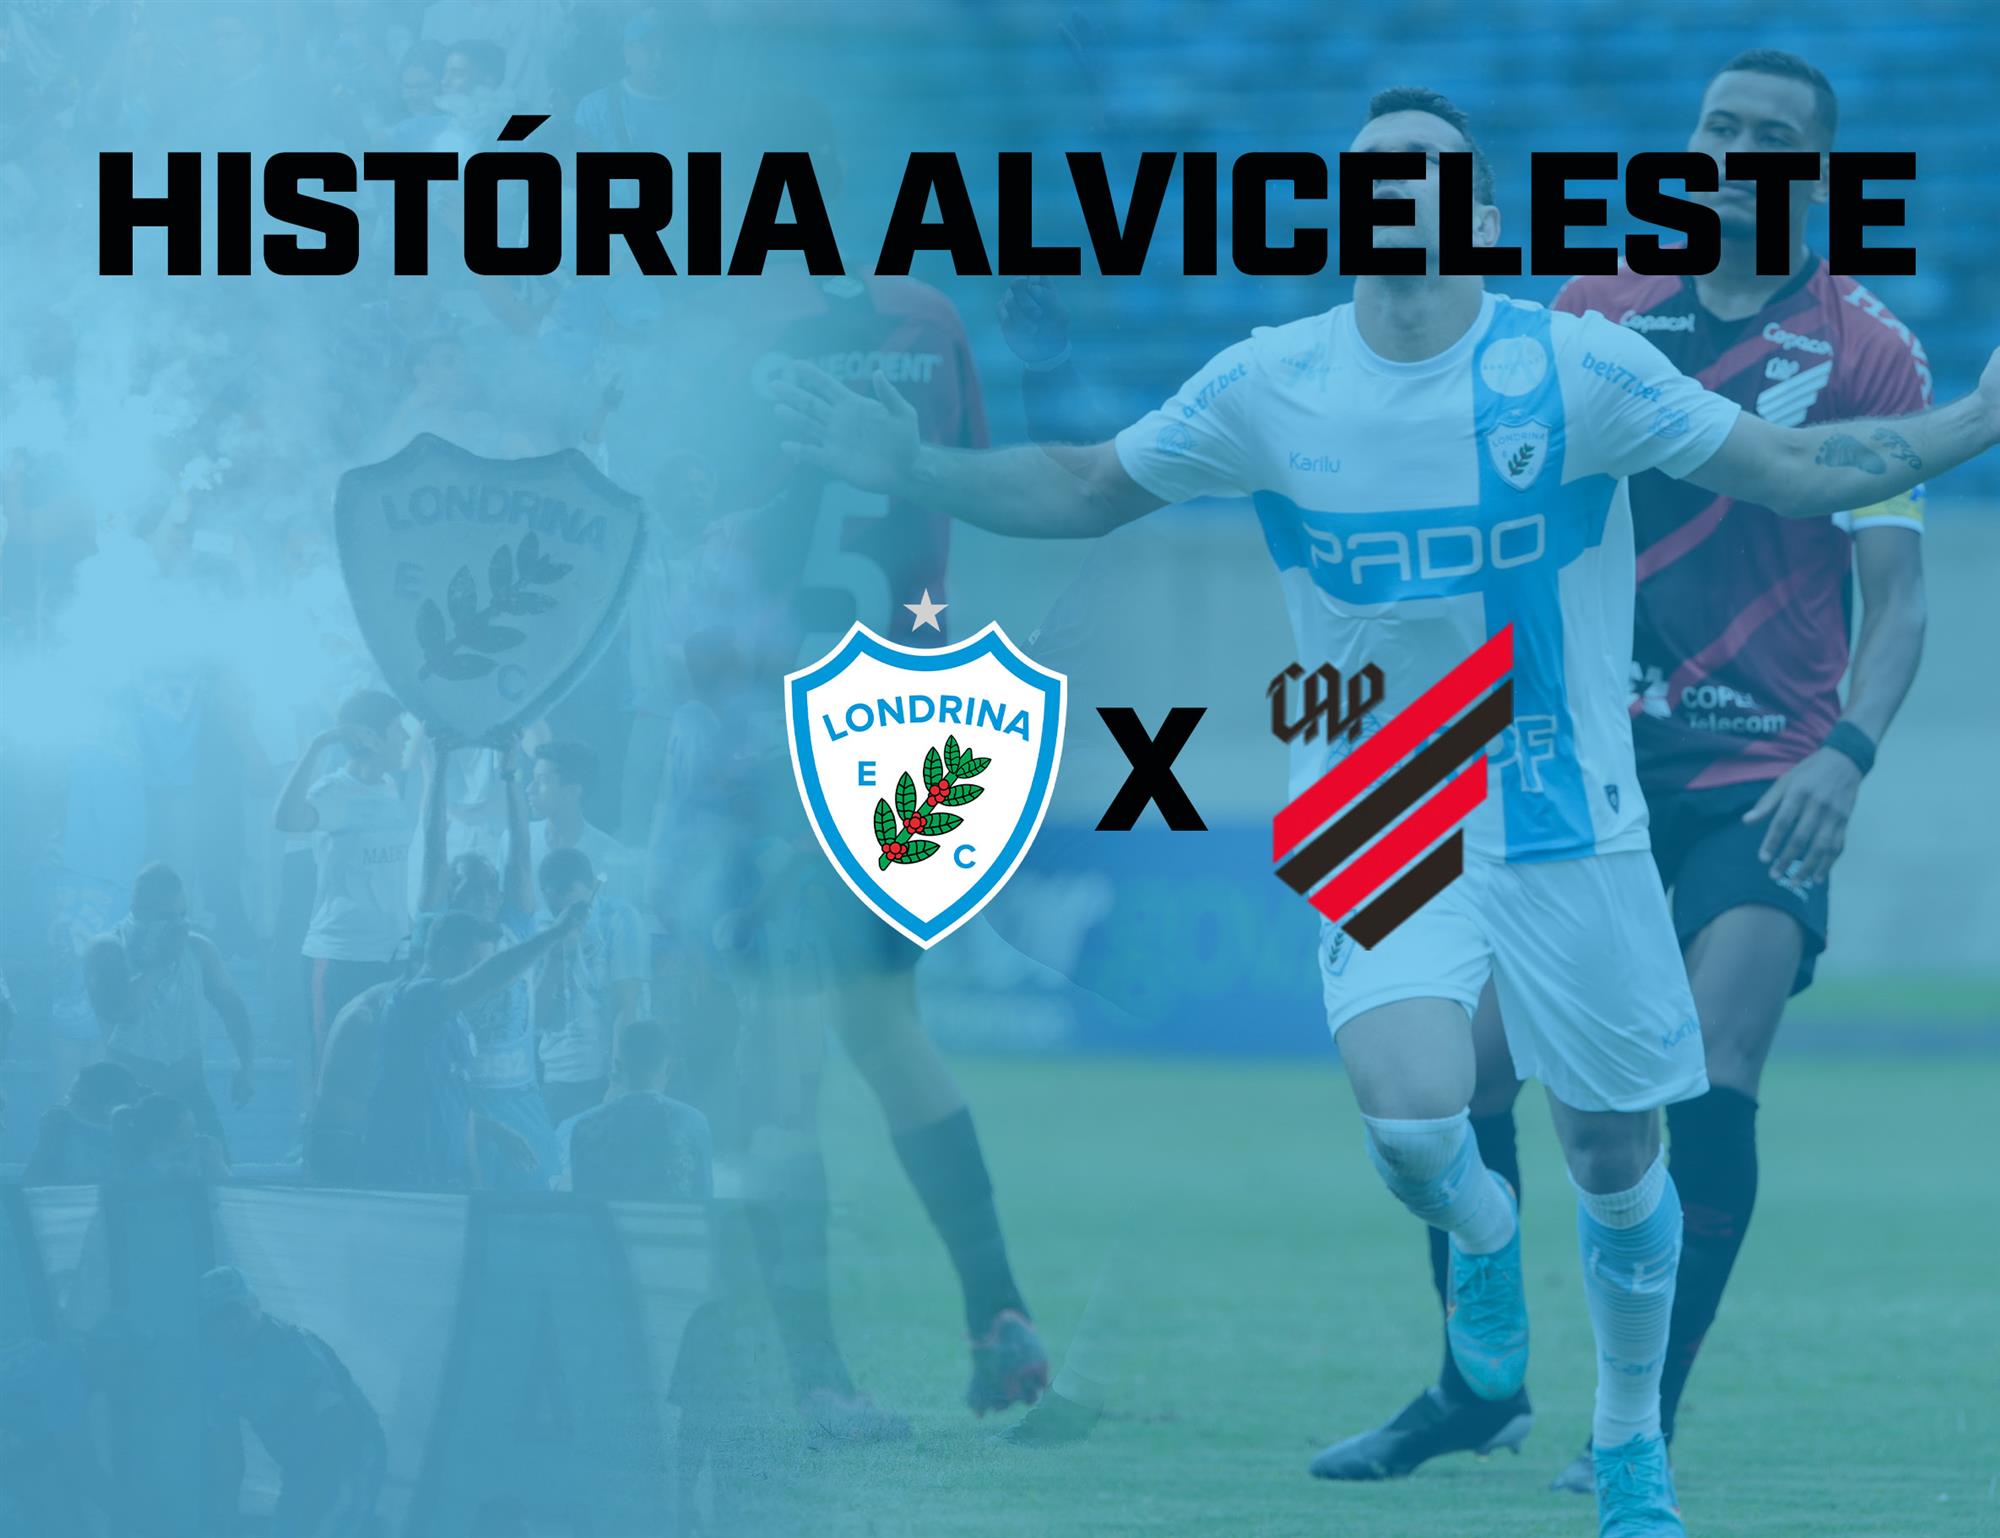 História Alviceleste: Londrina x Athletico Paranaense